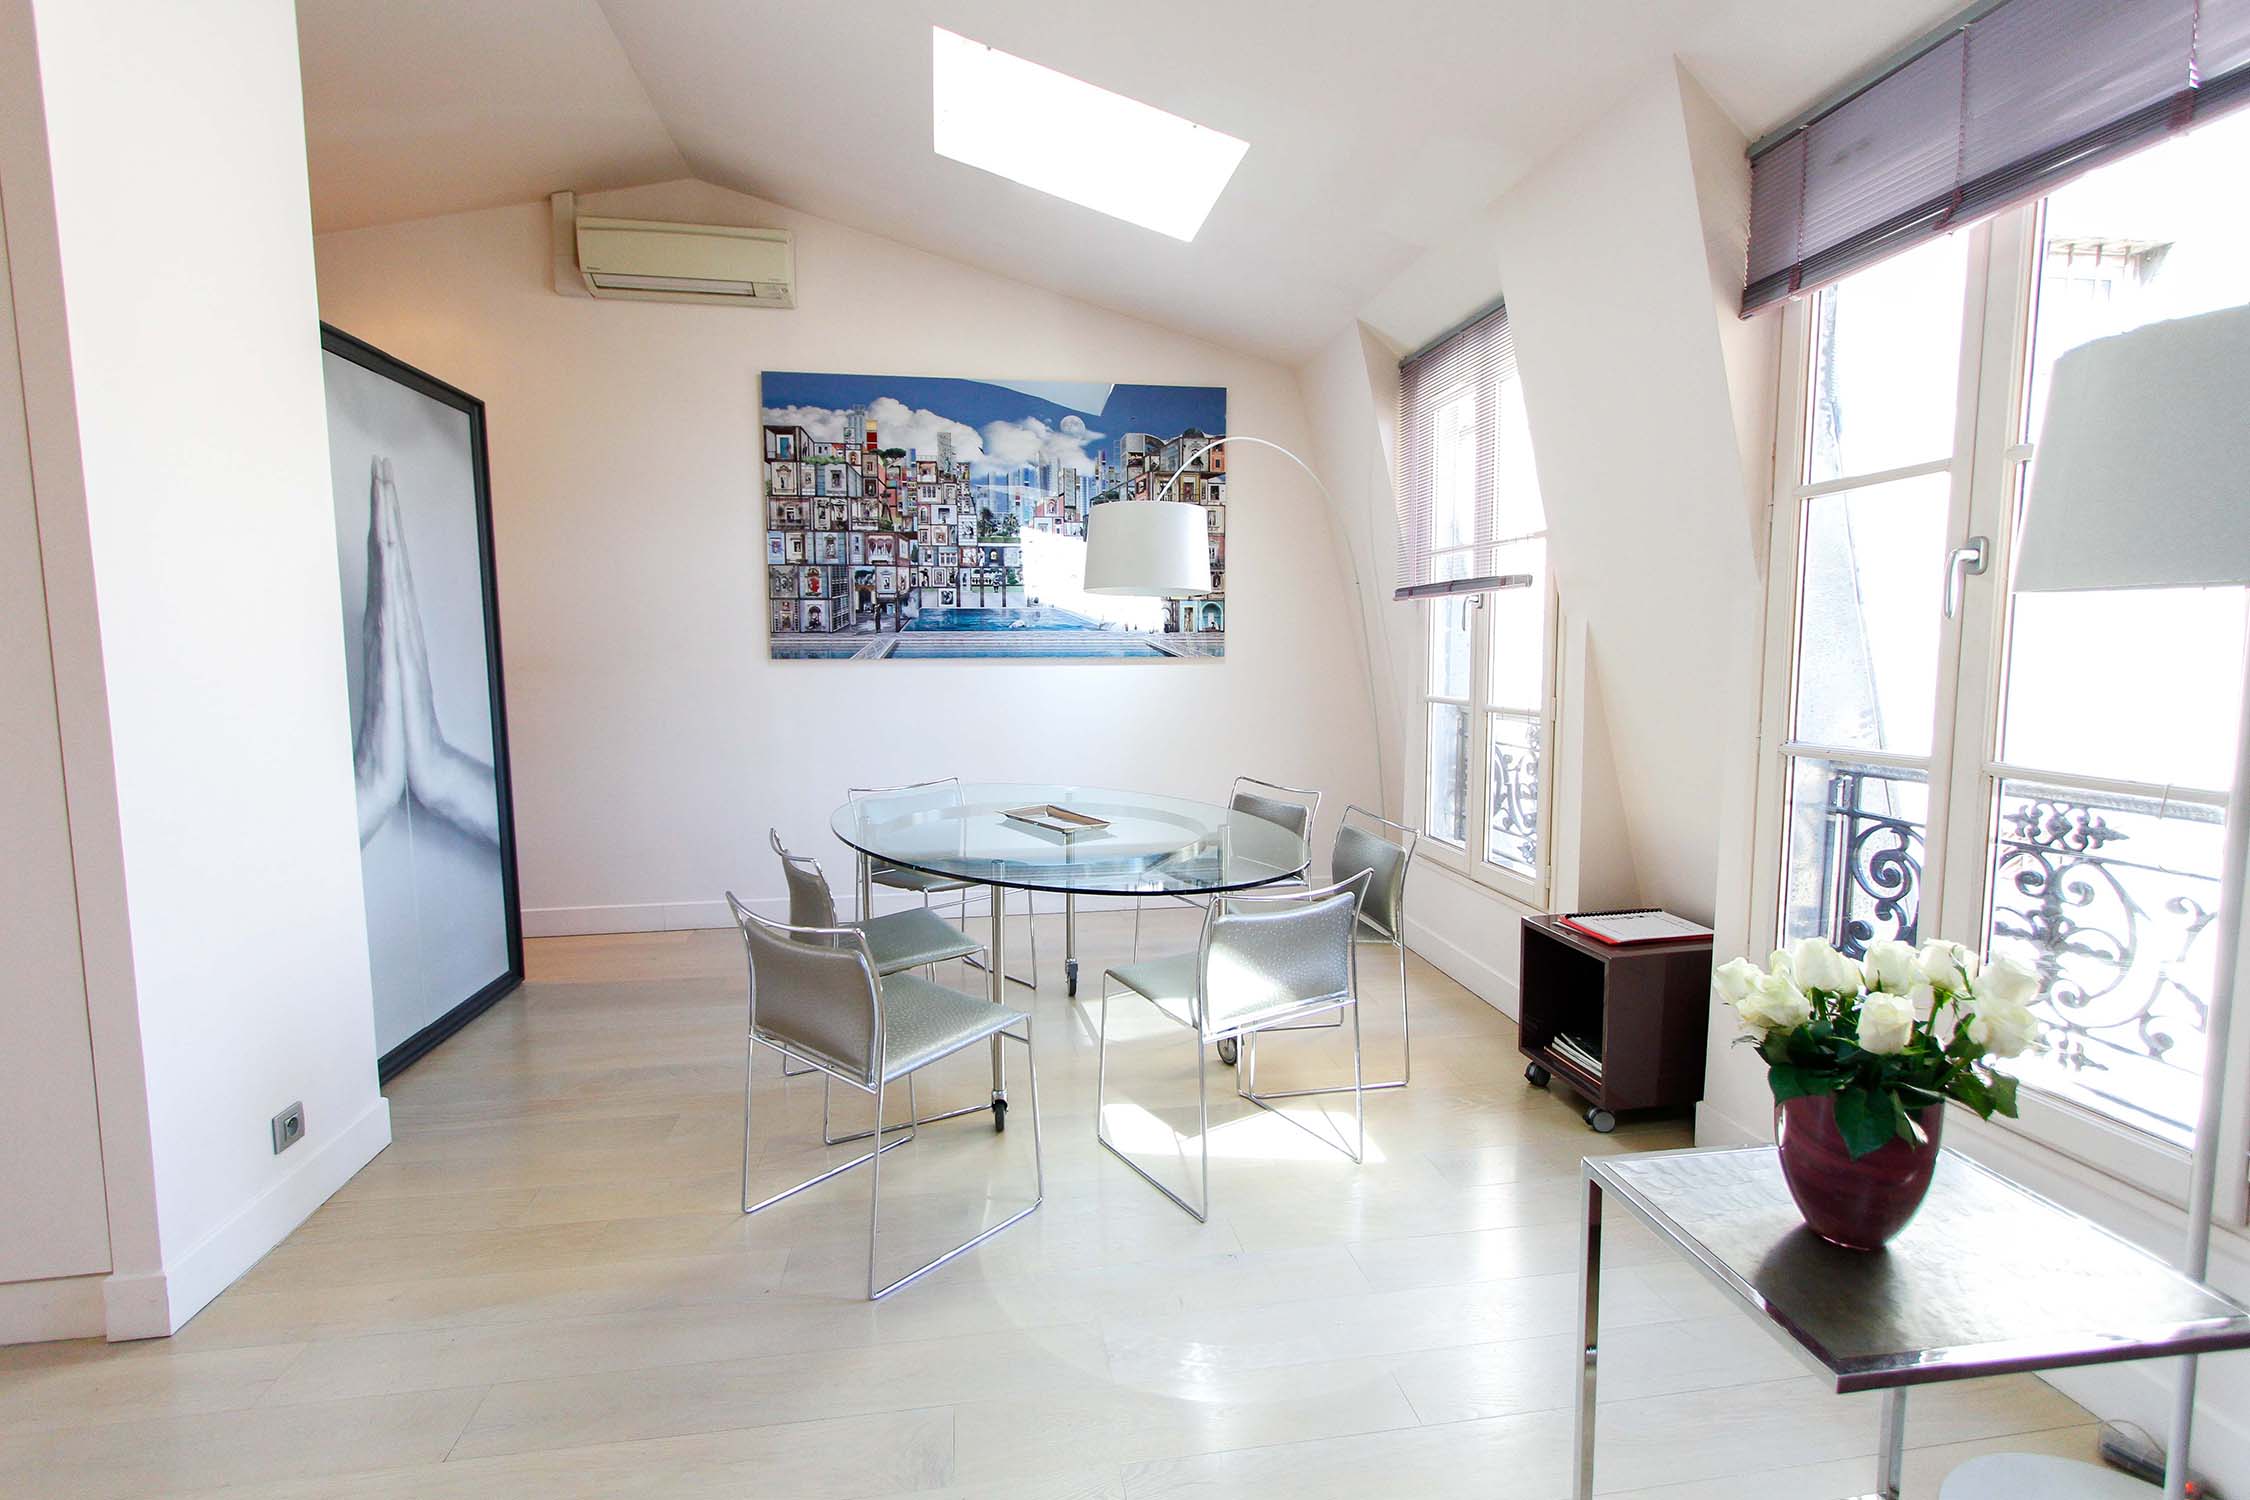 vente appartement duplex dernier étage Paris 6ème 75006 Saint Germain terrasse Rooftop Vue dégagée luxe parisien